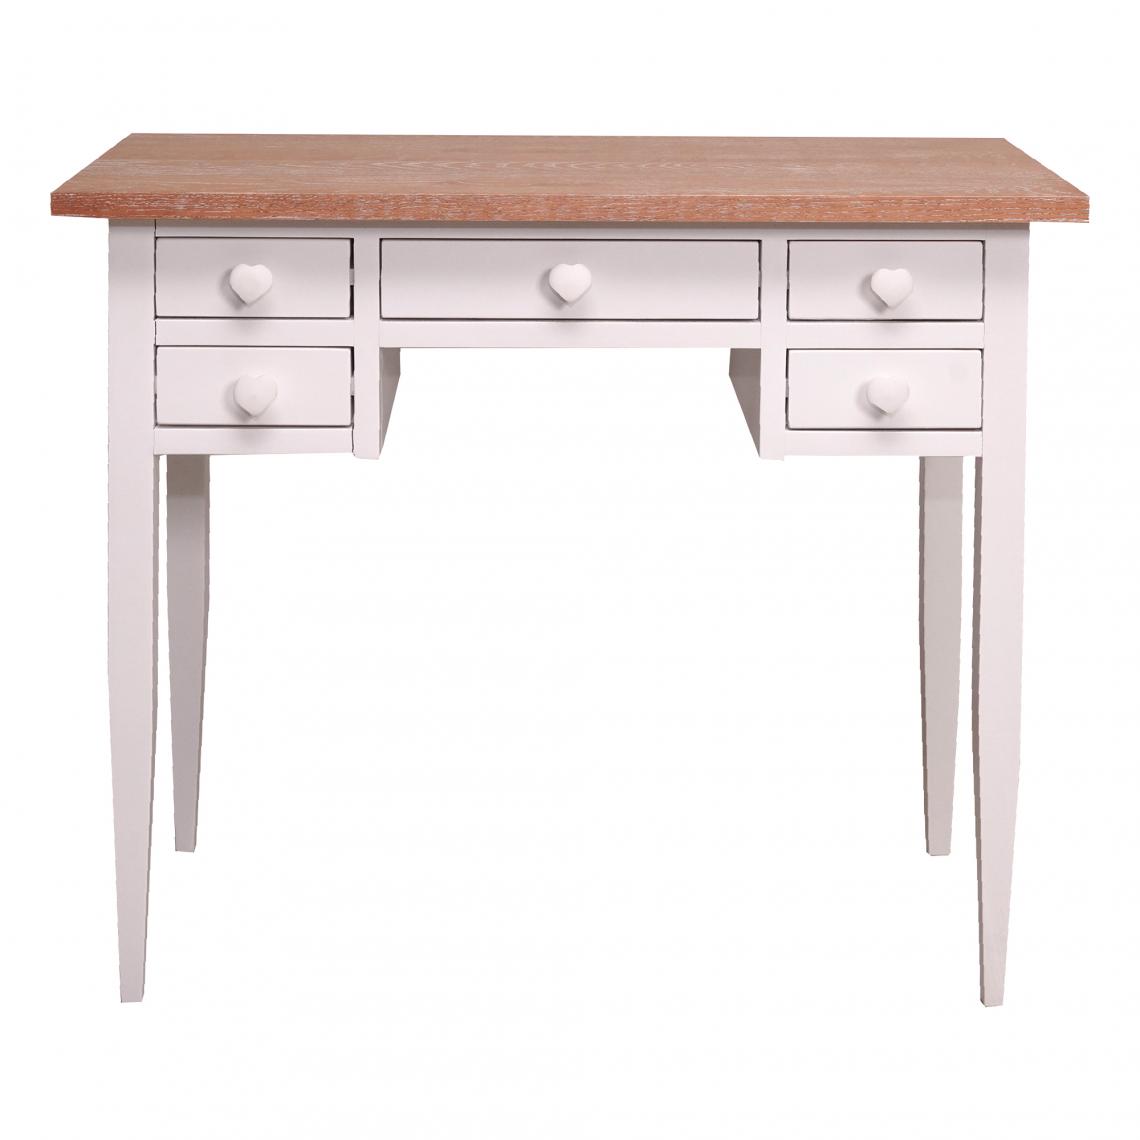 Alter - Table d'étude avec tiroirs, bureau vintage en bois, Made in Italy, 98x50h82 cm, couleur Blanc et Noyer - Tables à manger